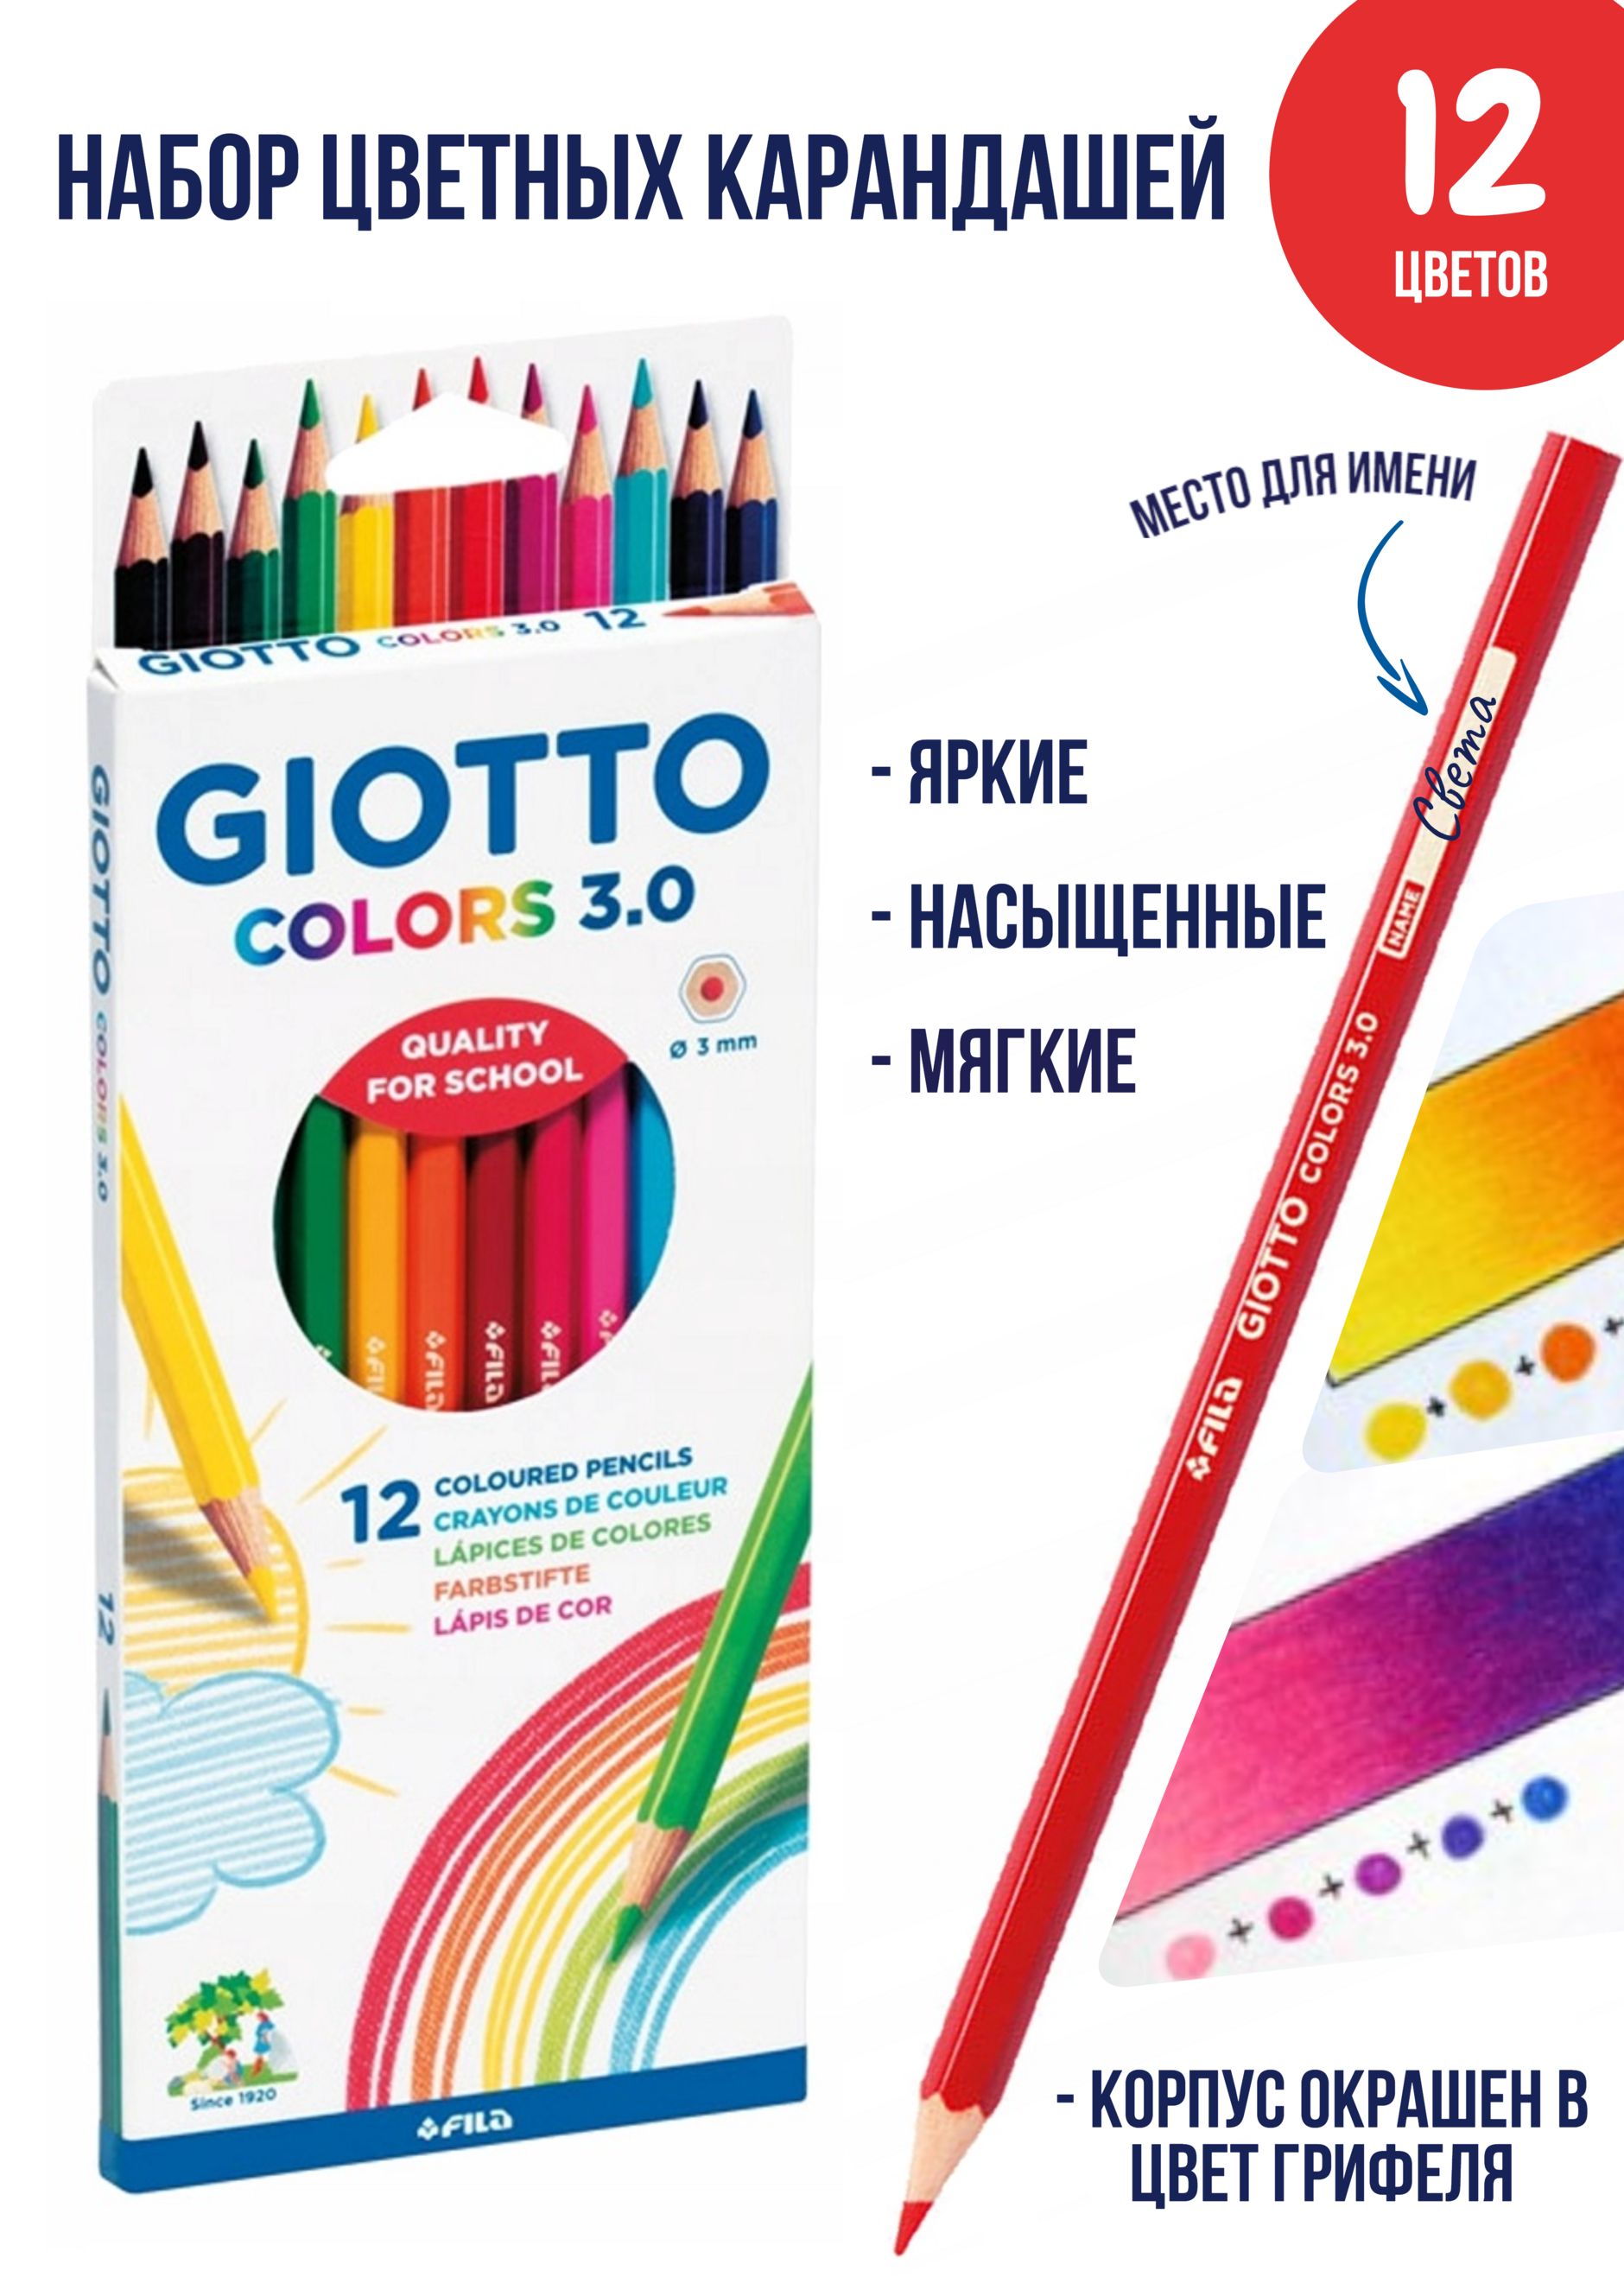 Основные цвета карандашей в пенале для первоклашек